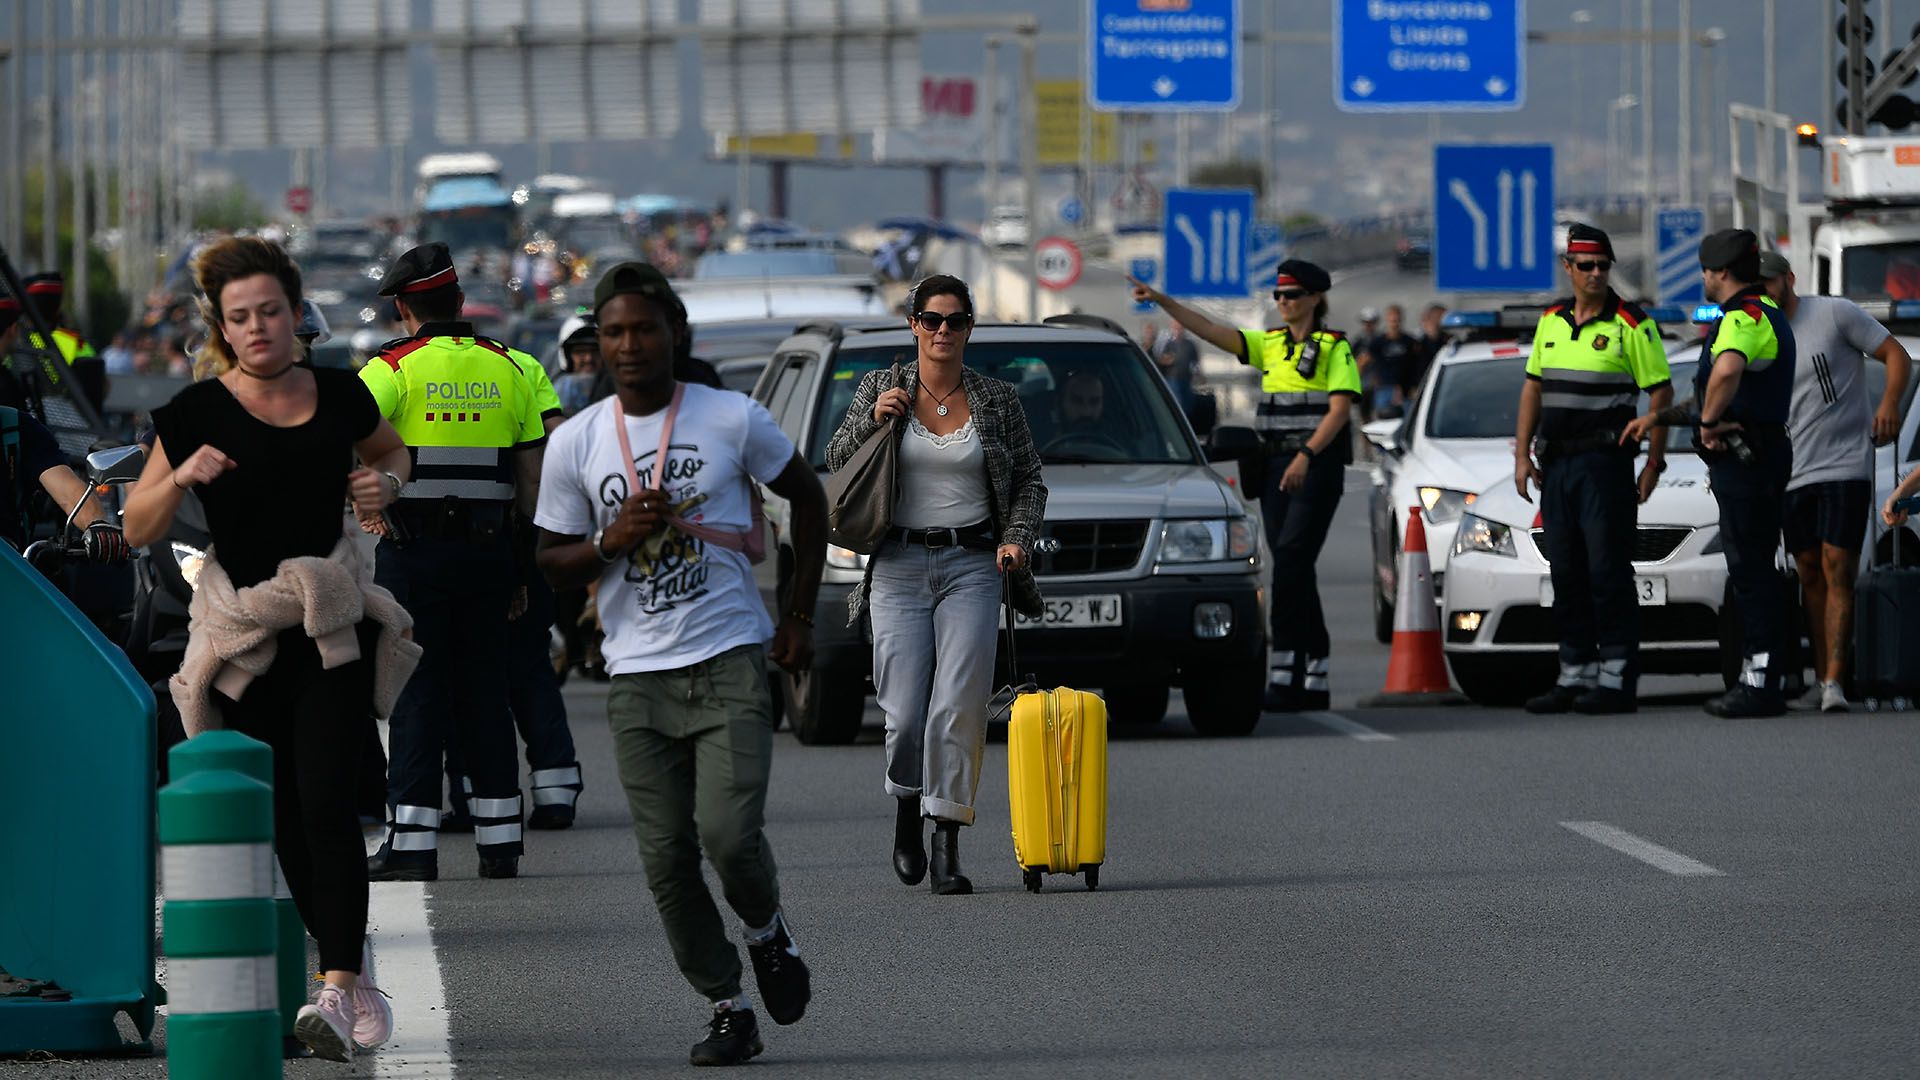 Pasajeros se vieron obligados a bajar de los vehículos e intentar llegar a pie al aeropuerto El Prat (AFP)